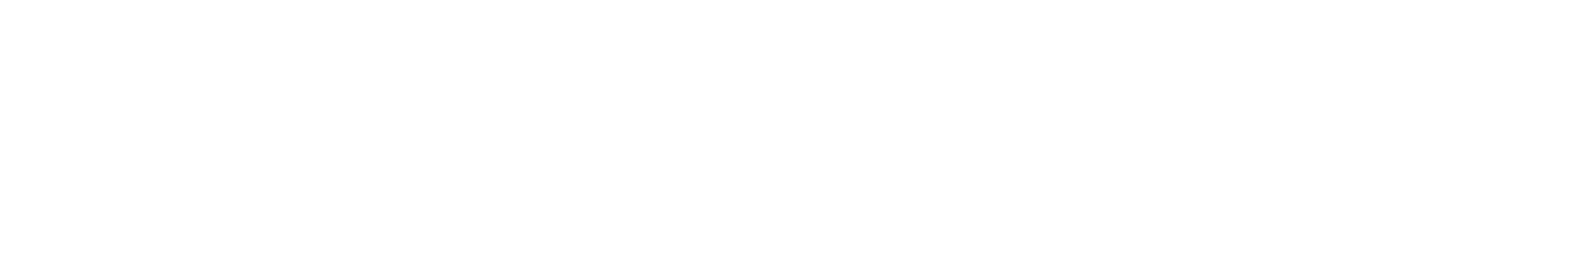 Banco BPM logo for dark backgrounds (transparent PNG)